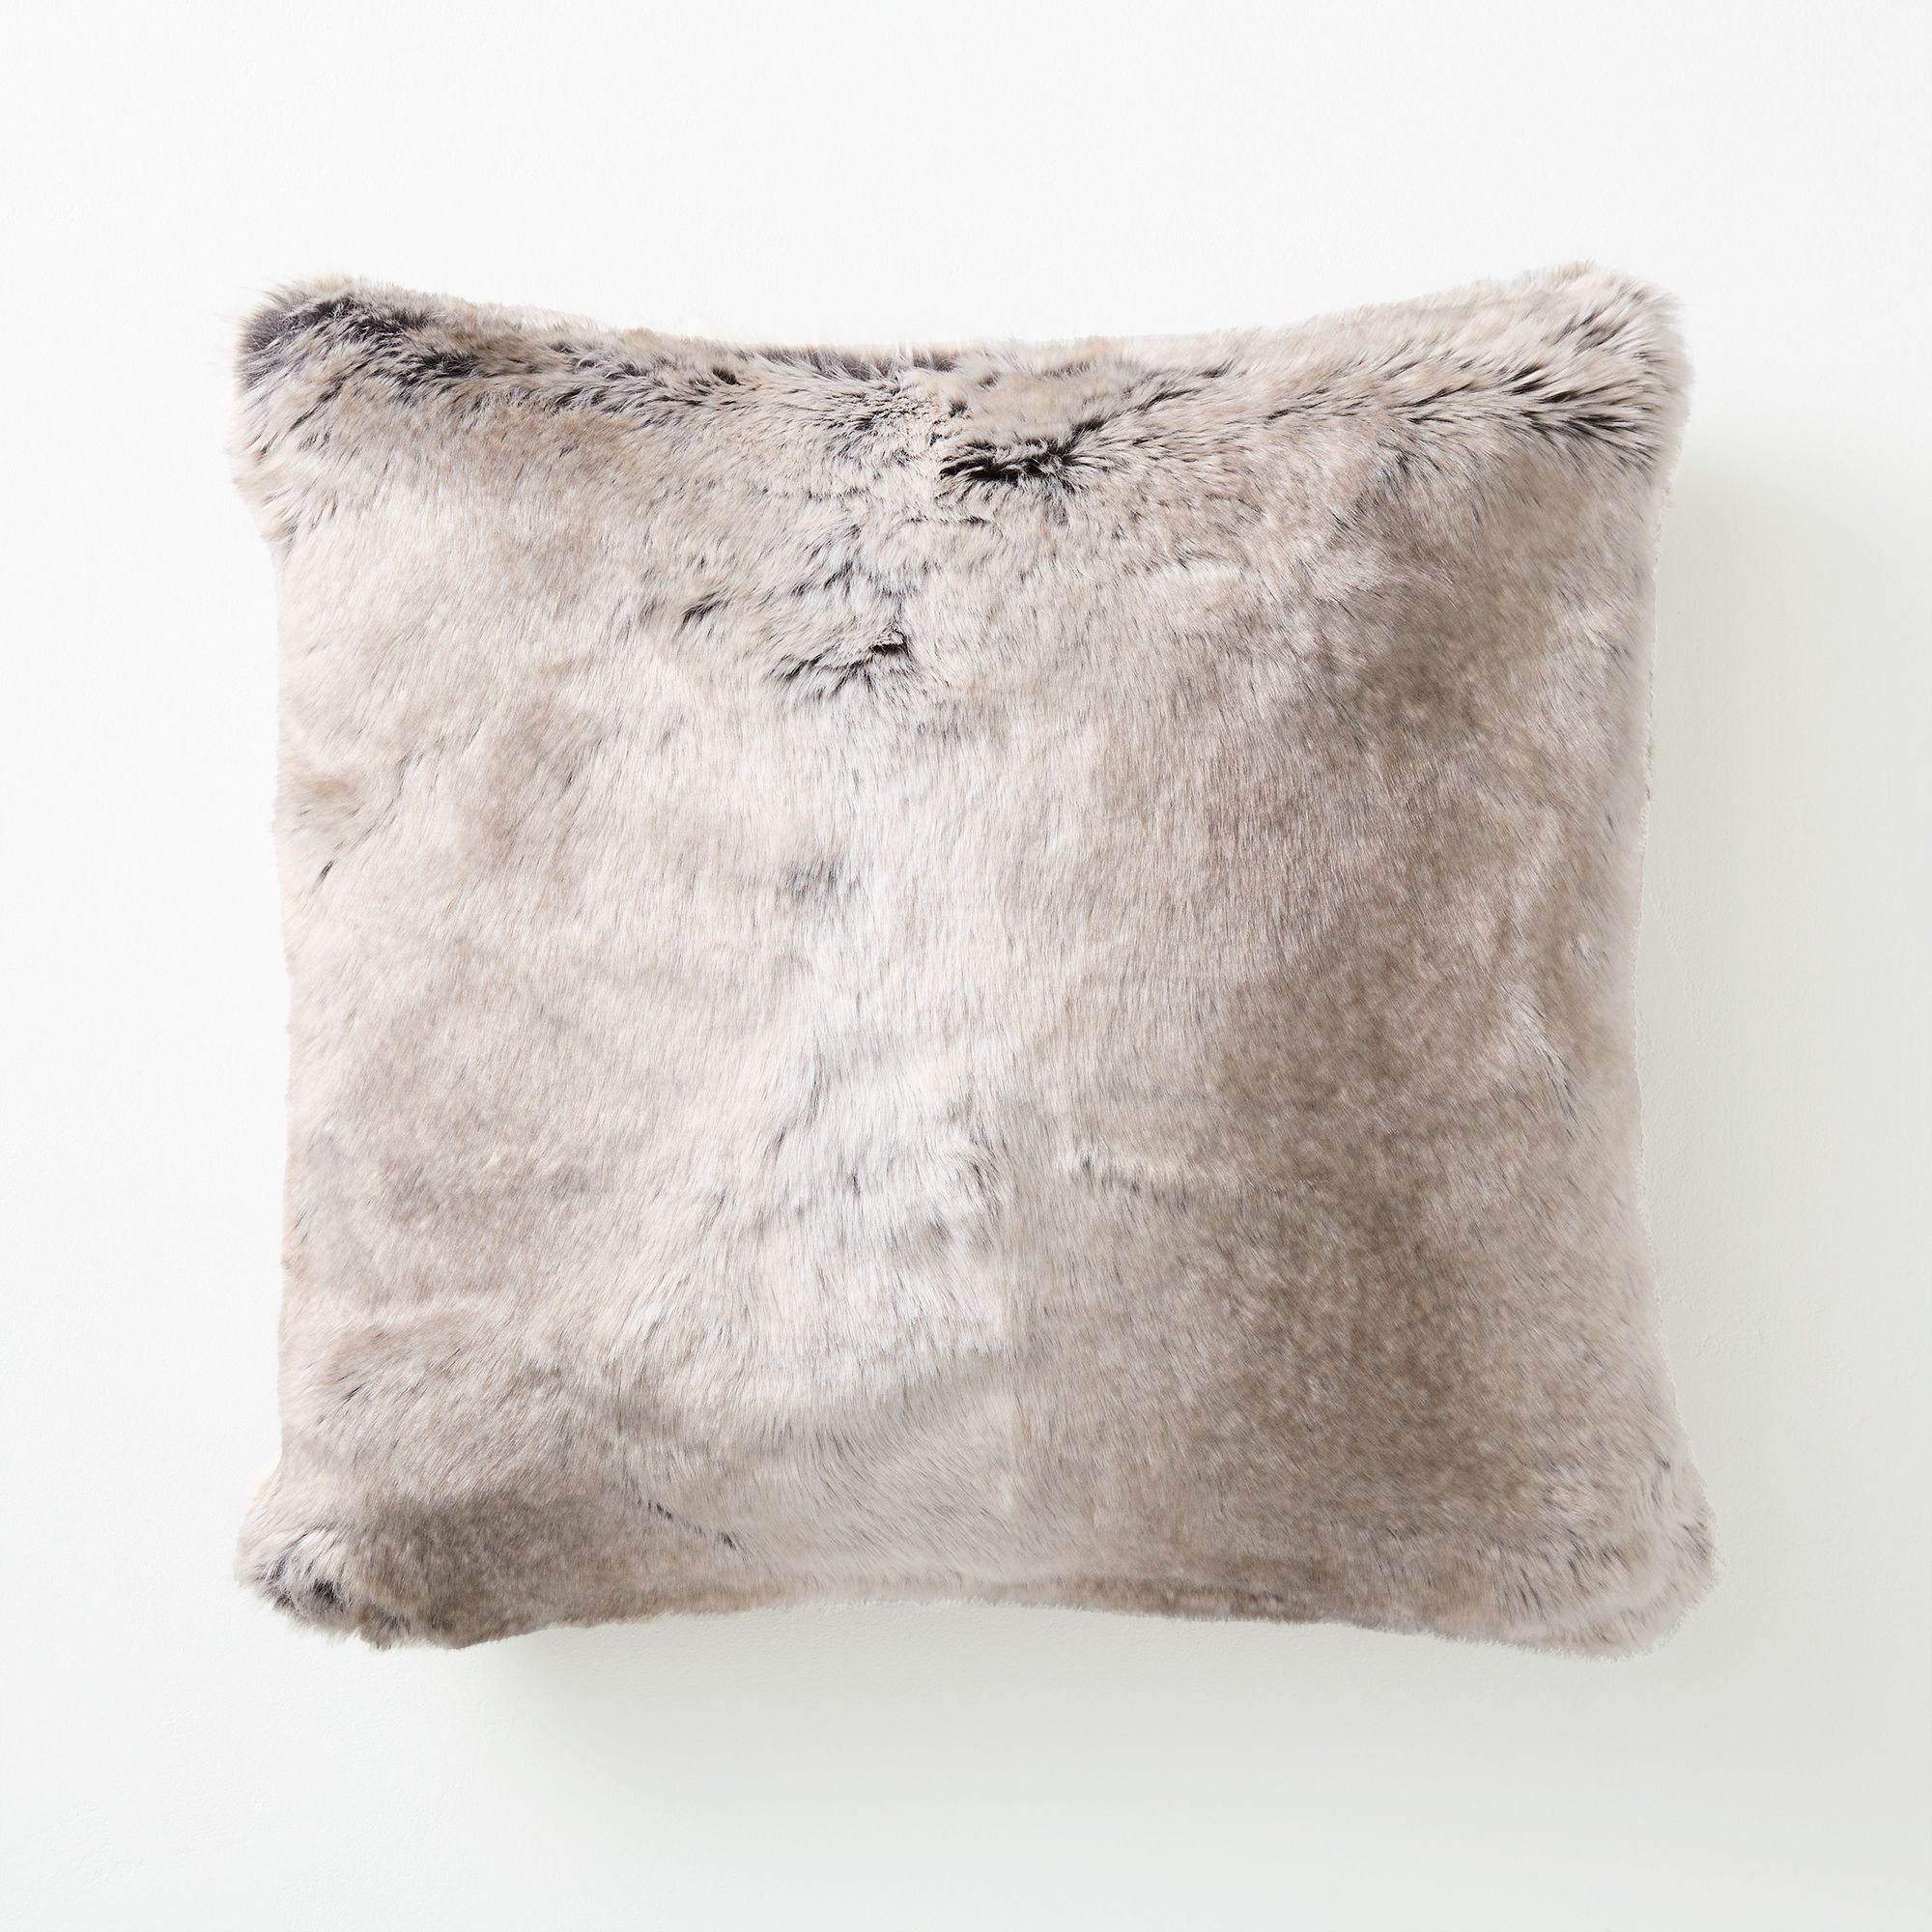 Faux Fur Ombre Pillow Cover | West Elm